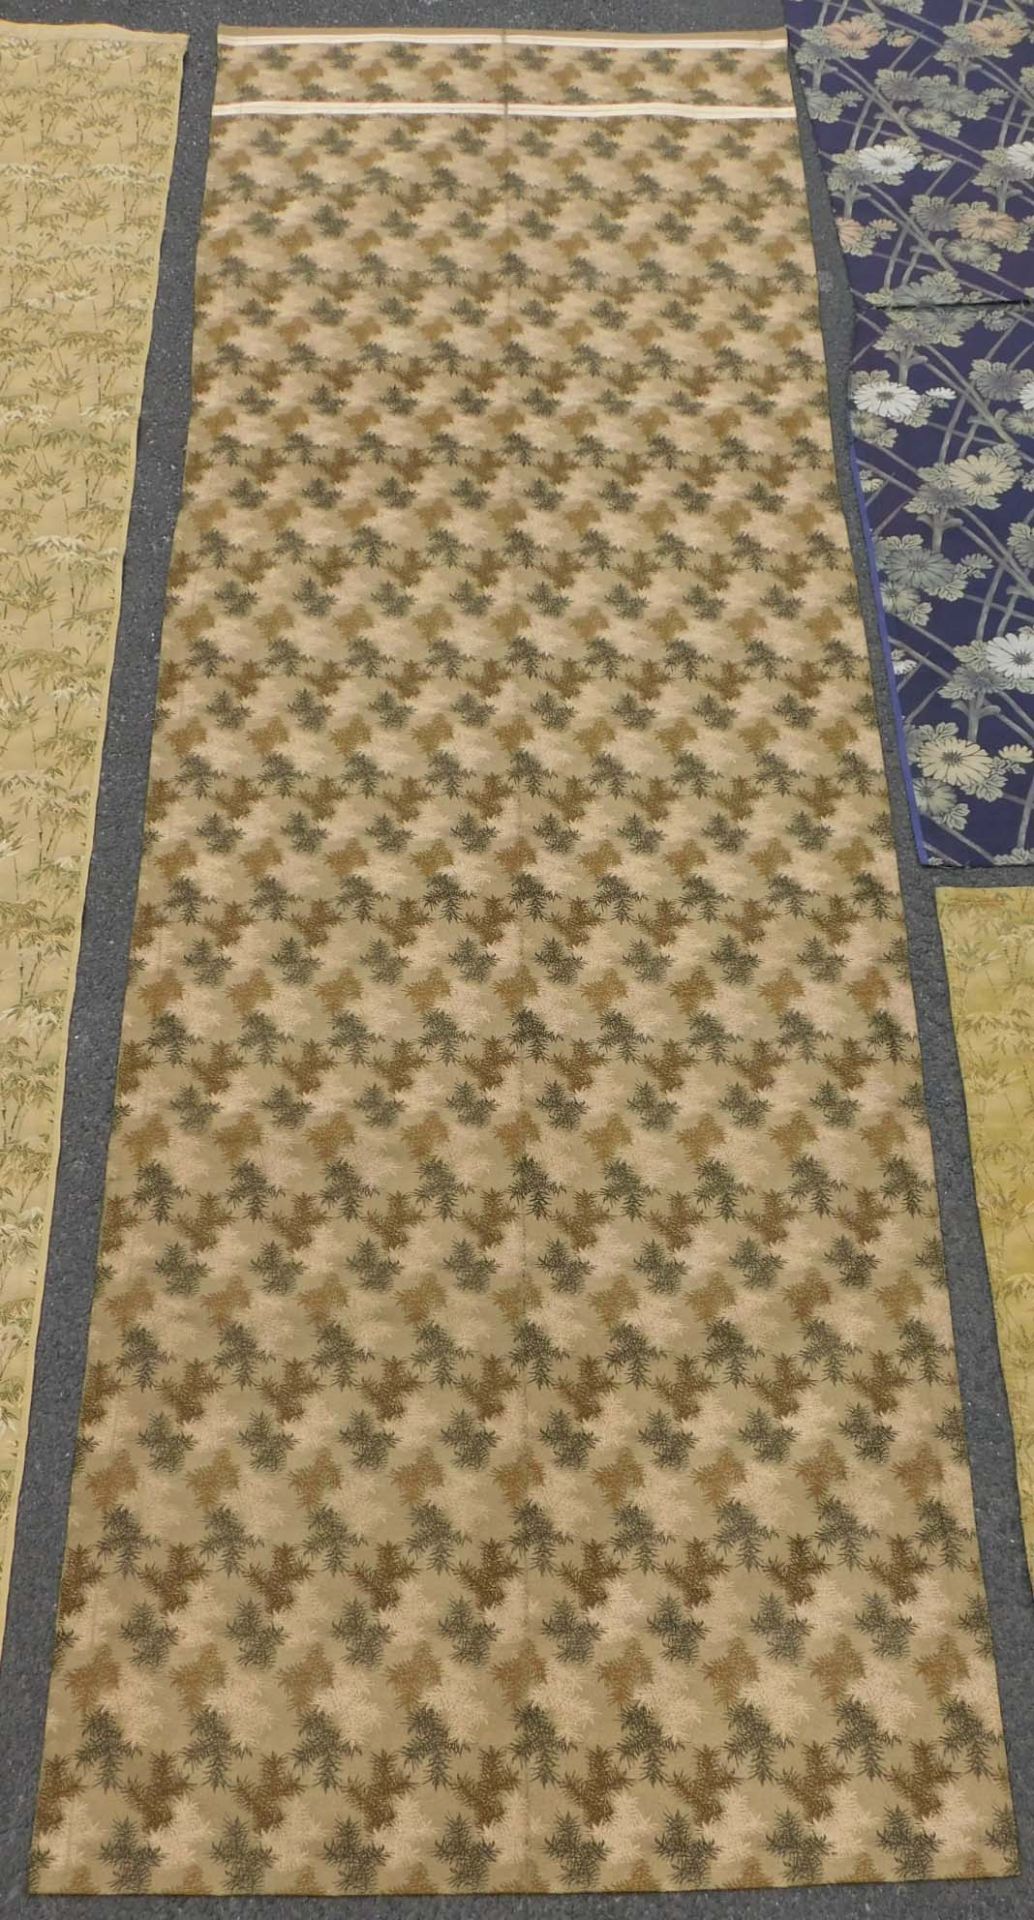 5 Obi Textilien Japan. Wohl alt, teils Seide, gewebt.Bis 205,5 cm x 65 cm.5 Obi Textiles Japan. - Image 7 of 12